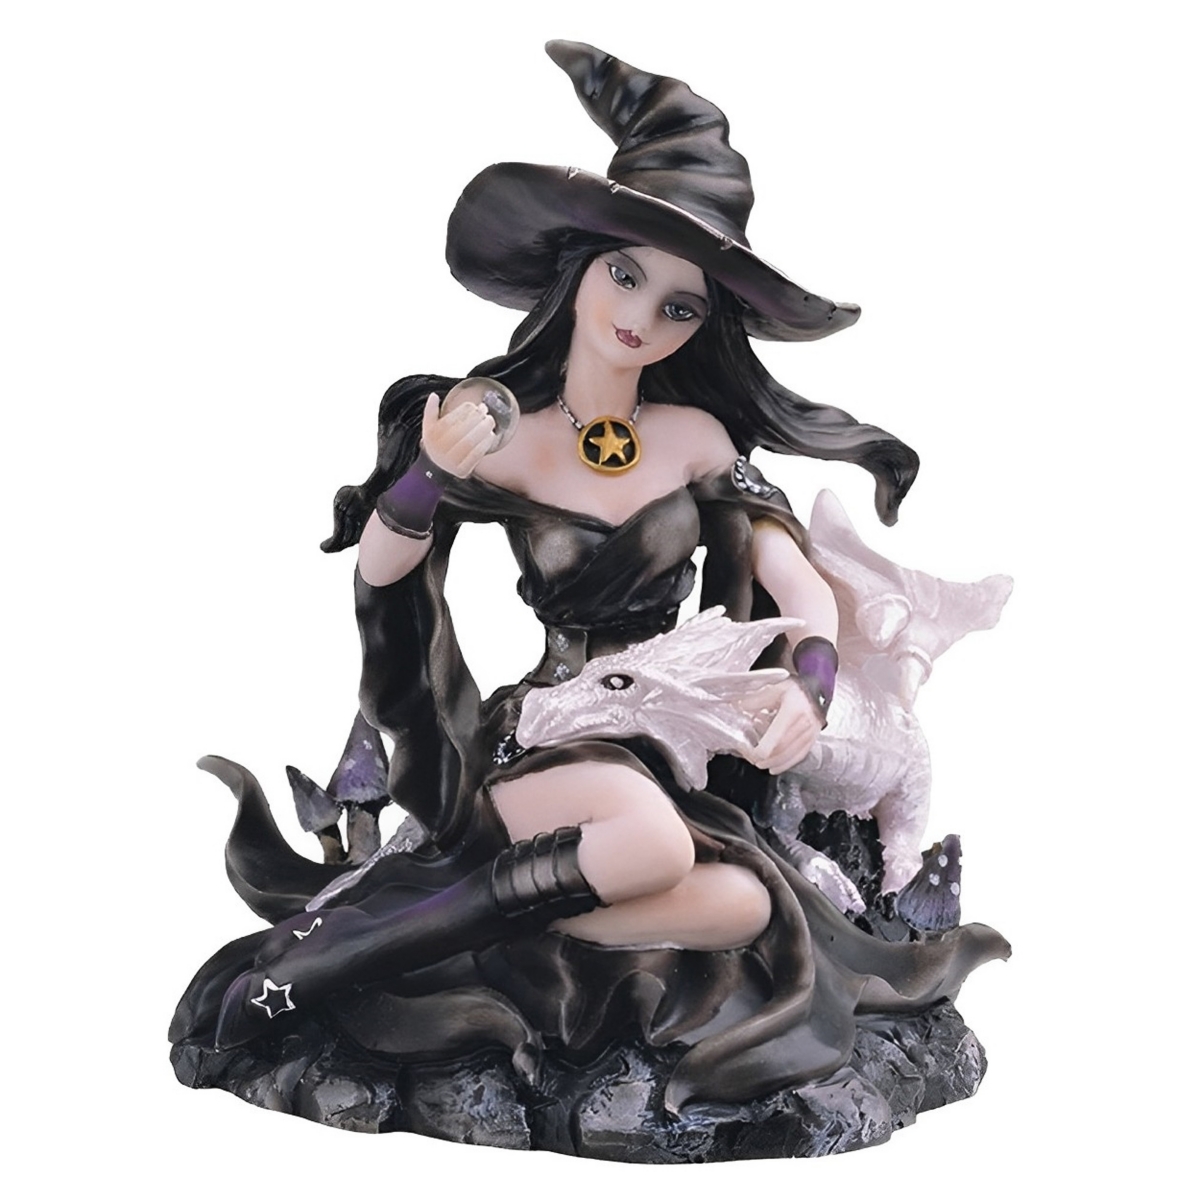 Fc Design 6"h Sorceress Witch With Black And White Dragon Statue Fantasy Decoration Figurine Home Decor Perfec In Multicolor